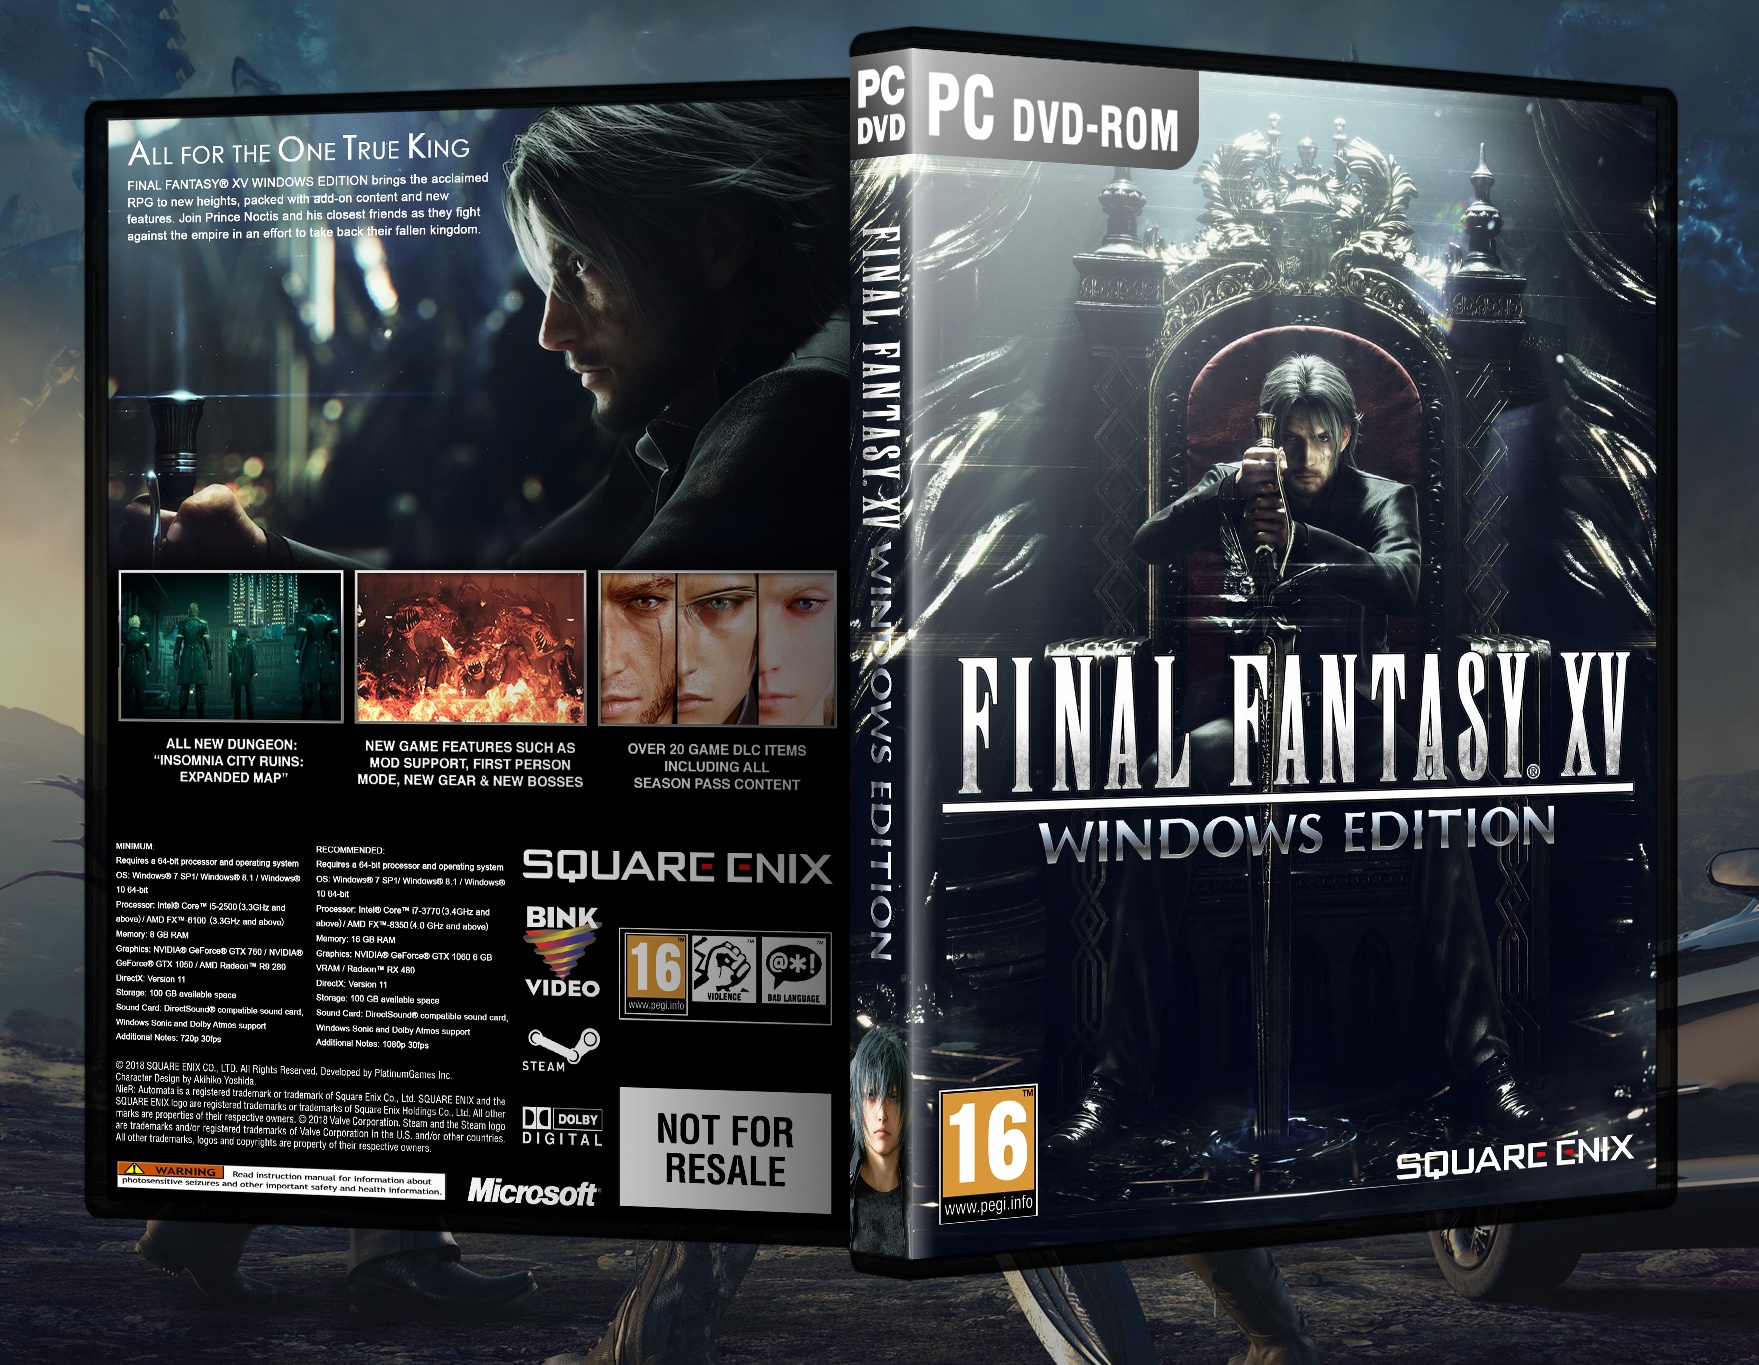 Final Fantasy XV: Windows Edition box cover